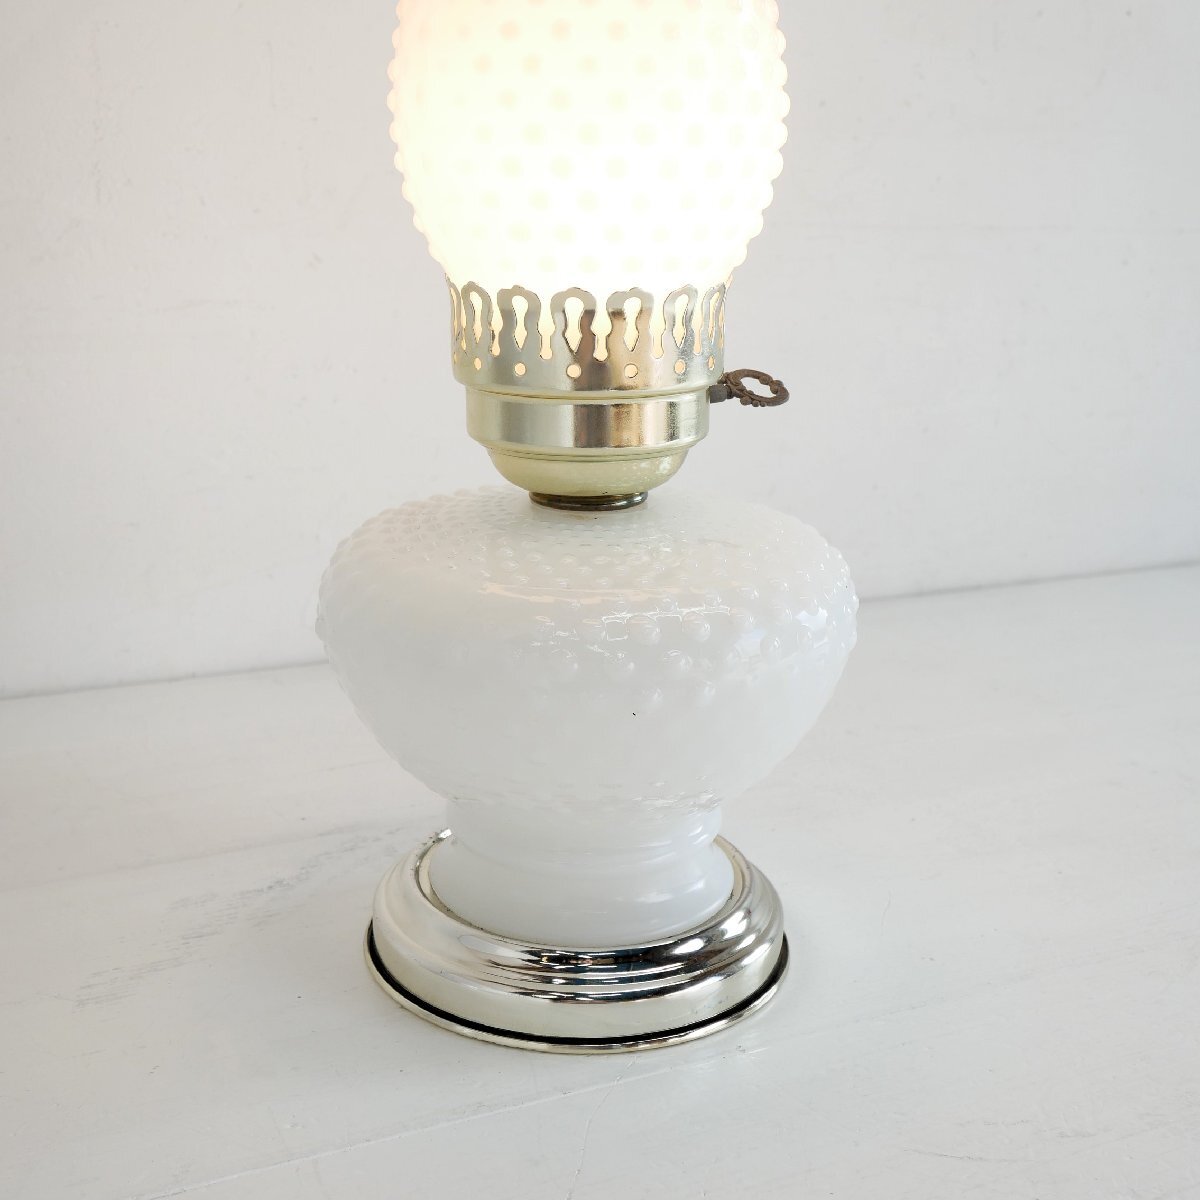 1960's ホブネイル ミルクガラス テーブルランプ / アメリカ オイルランプ風 ヴィンテージ アンティーク照明 #602-15-55-250_画像3